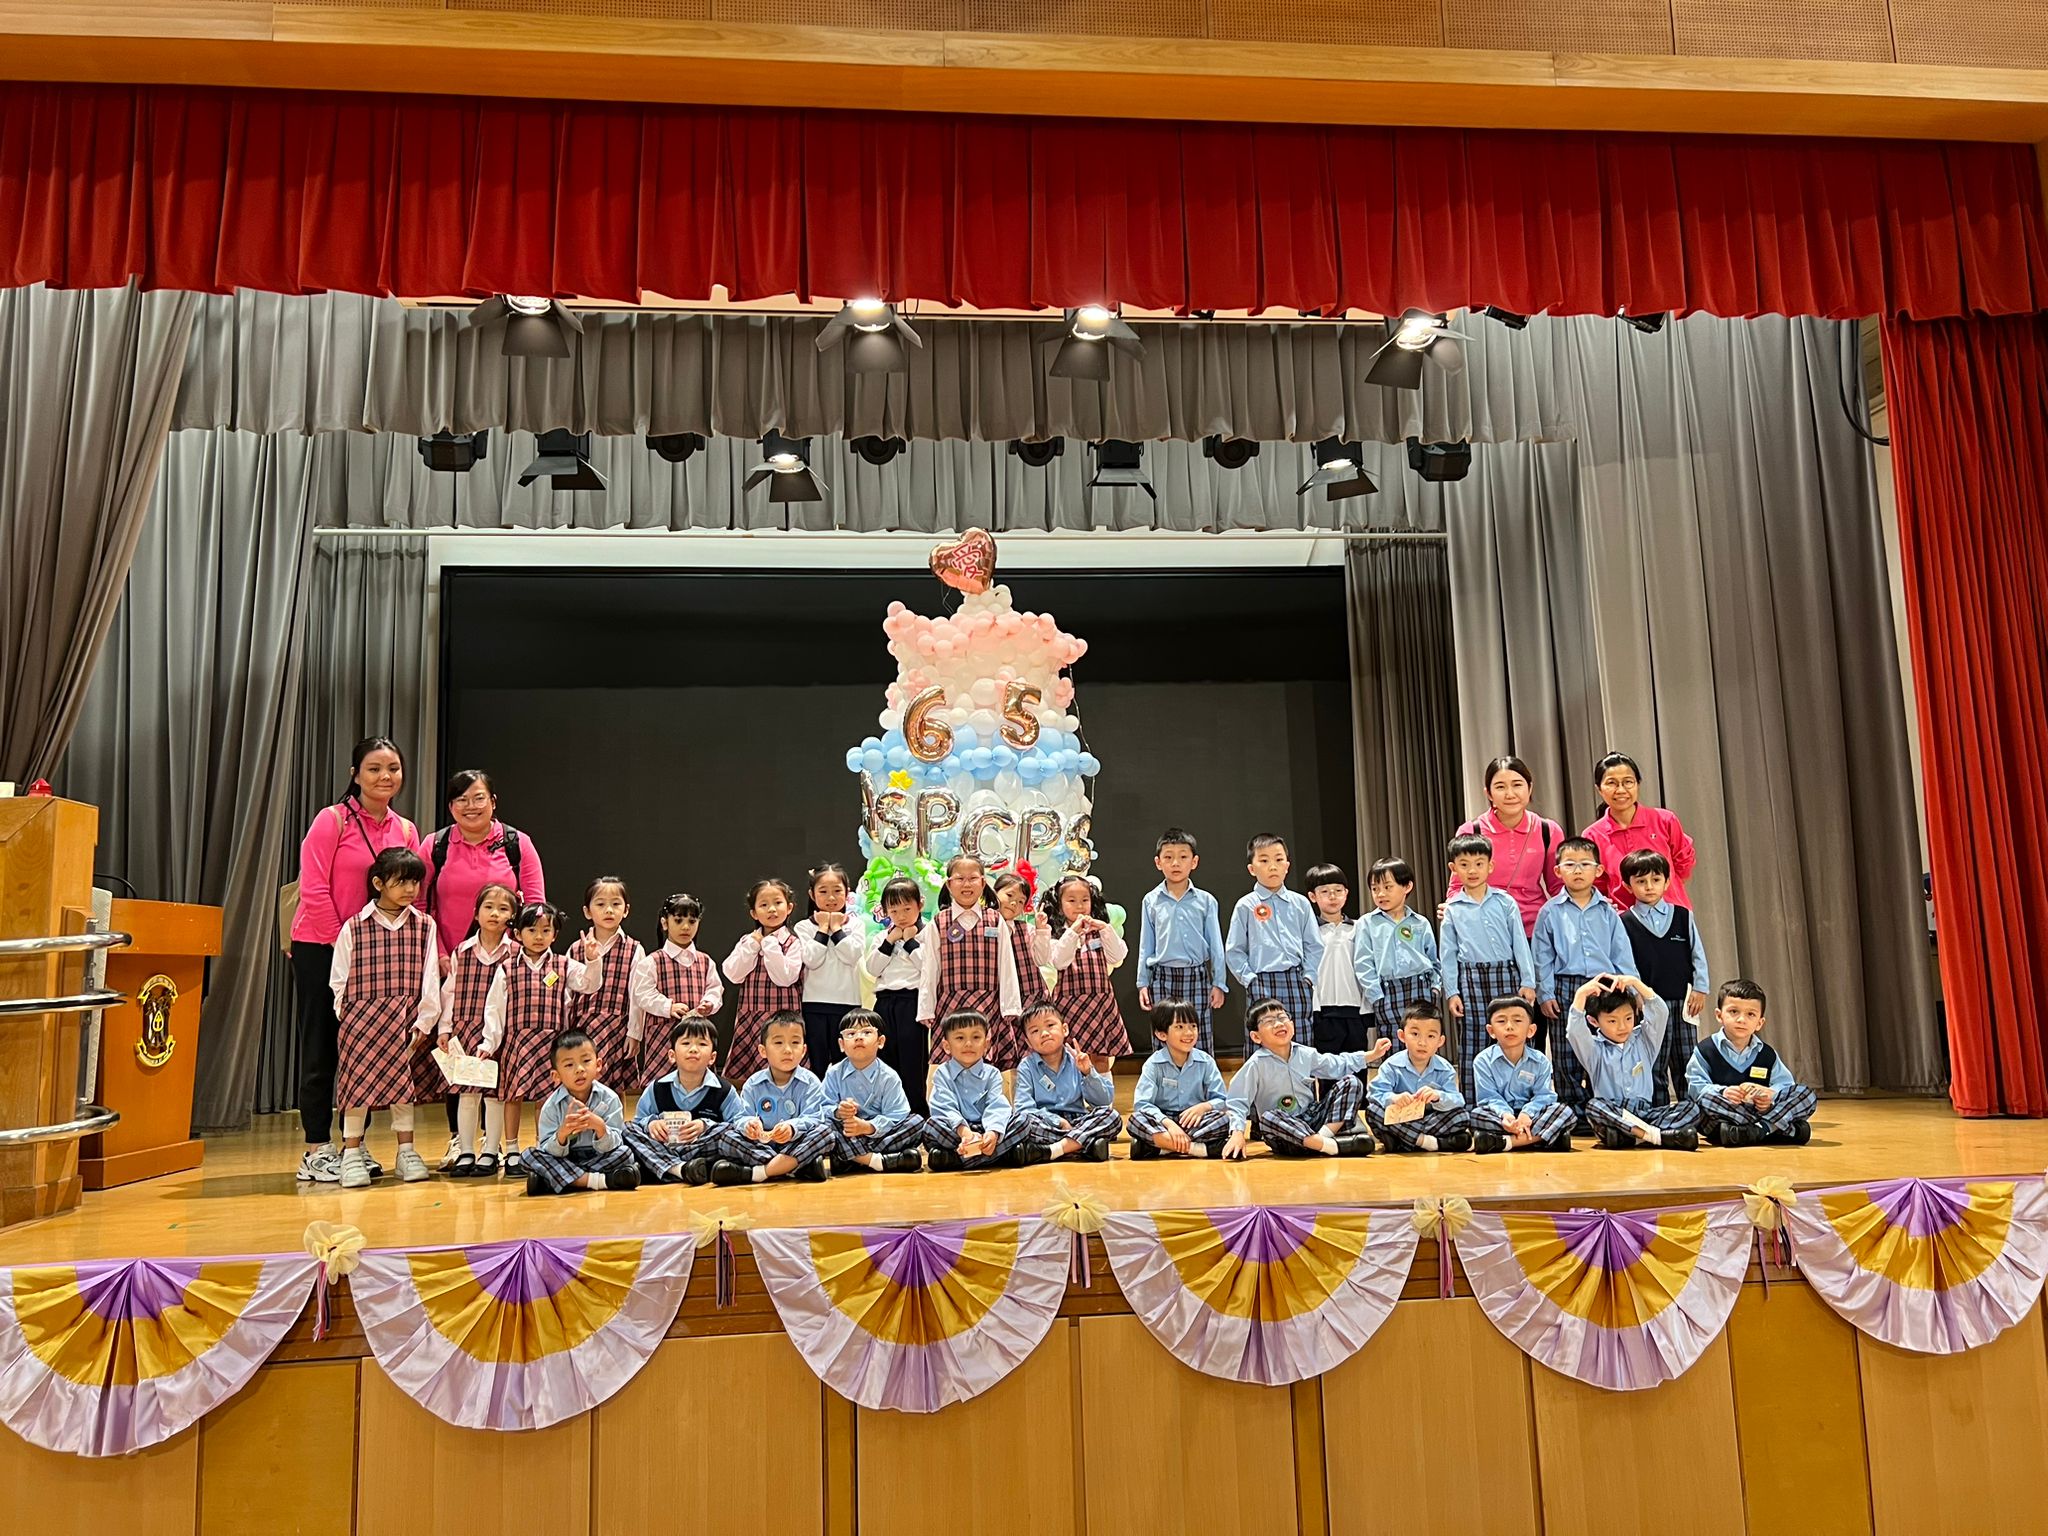 參觀香港仔聖伯多祿天主教小學六十五周年校慶活動